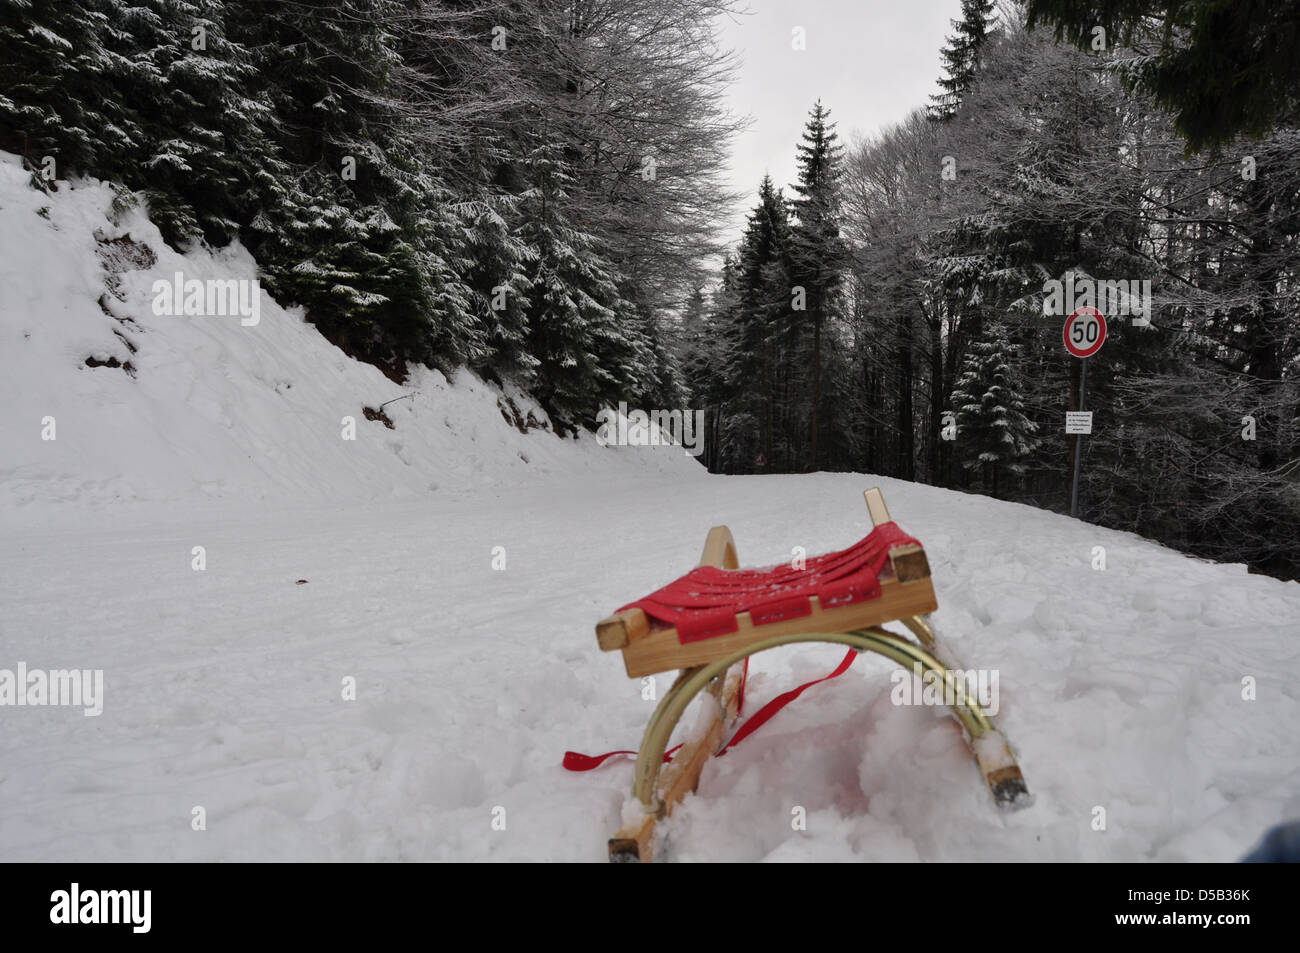 Traîneau dans la neige dans une forêt photographiée près de Tegernsee, Allemagne Banque D'Images